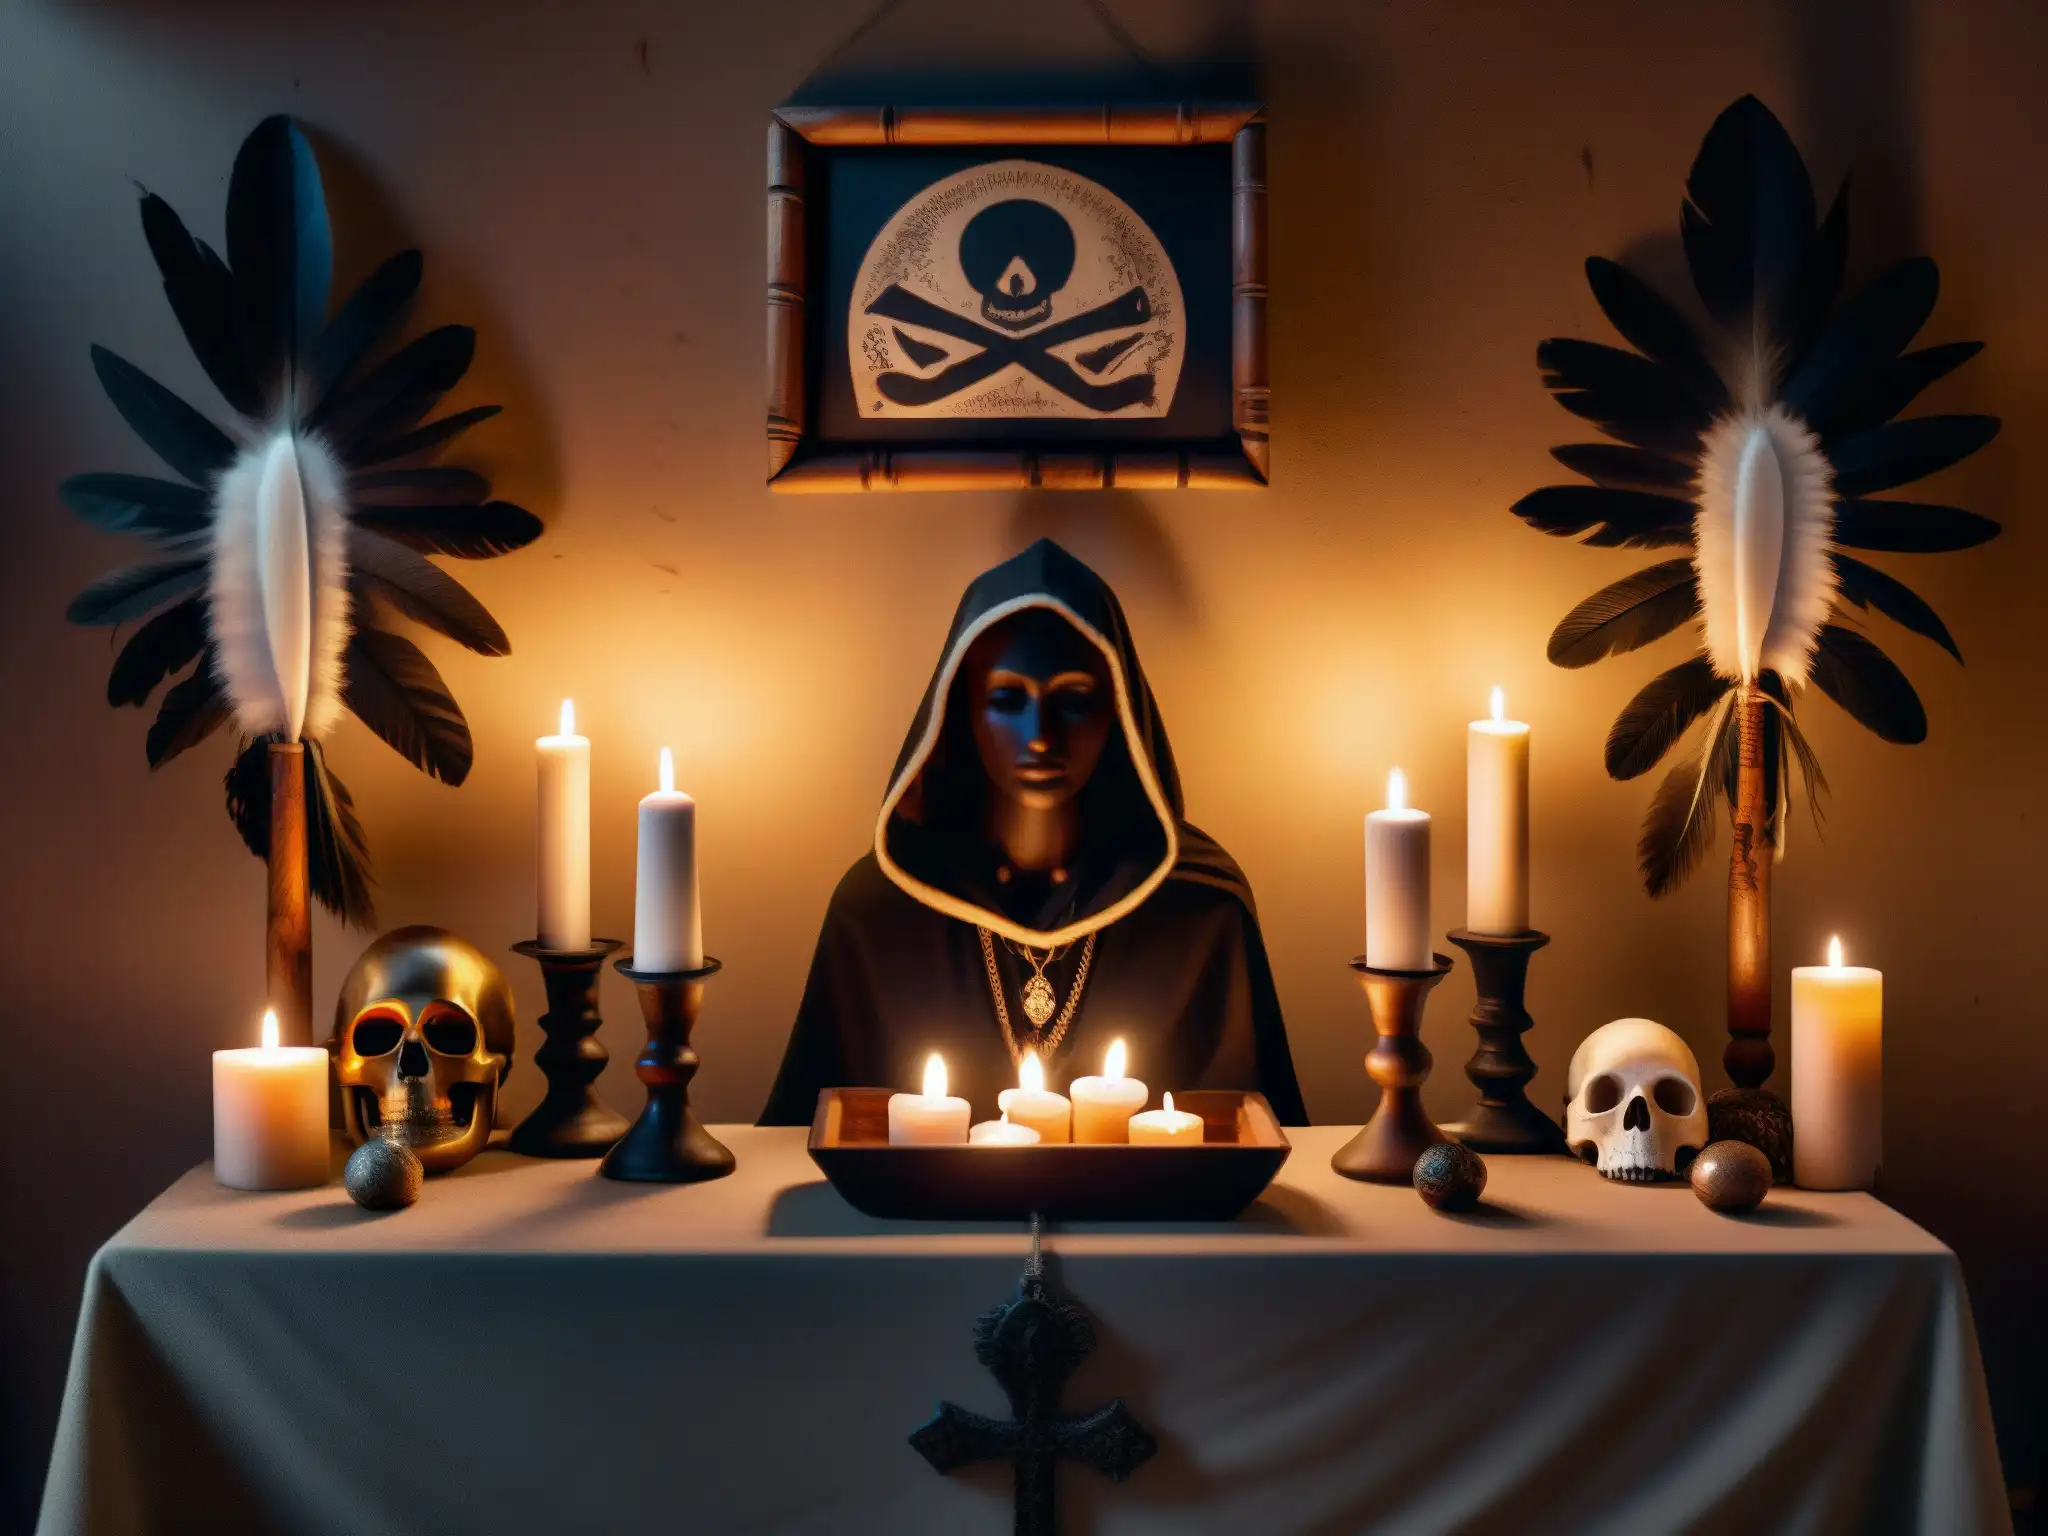 Un altar de vudú detallado en 8k, iluminado con velas y objetos rituales